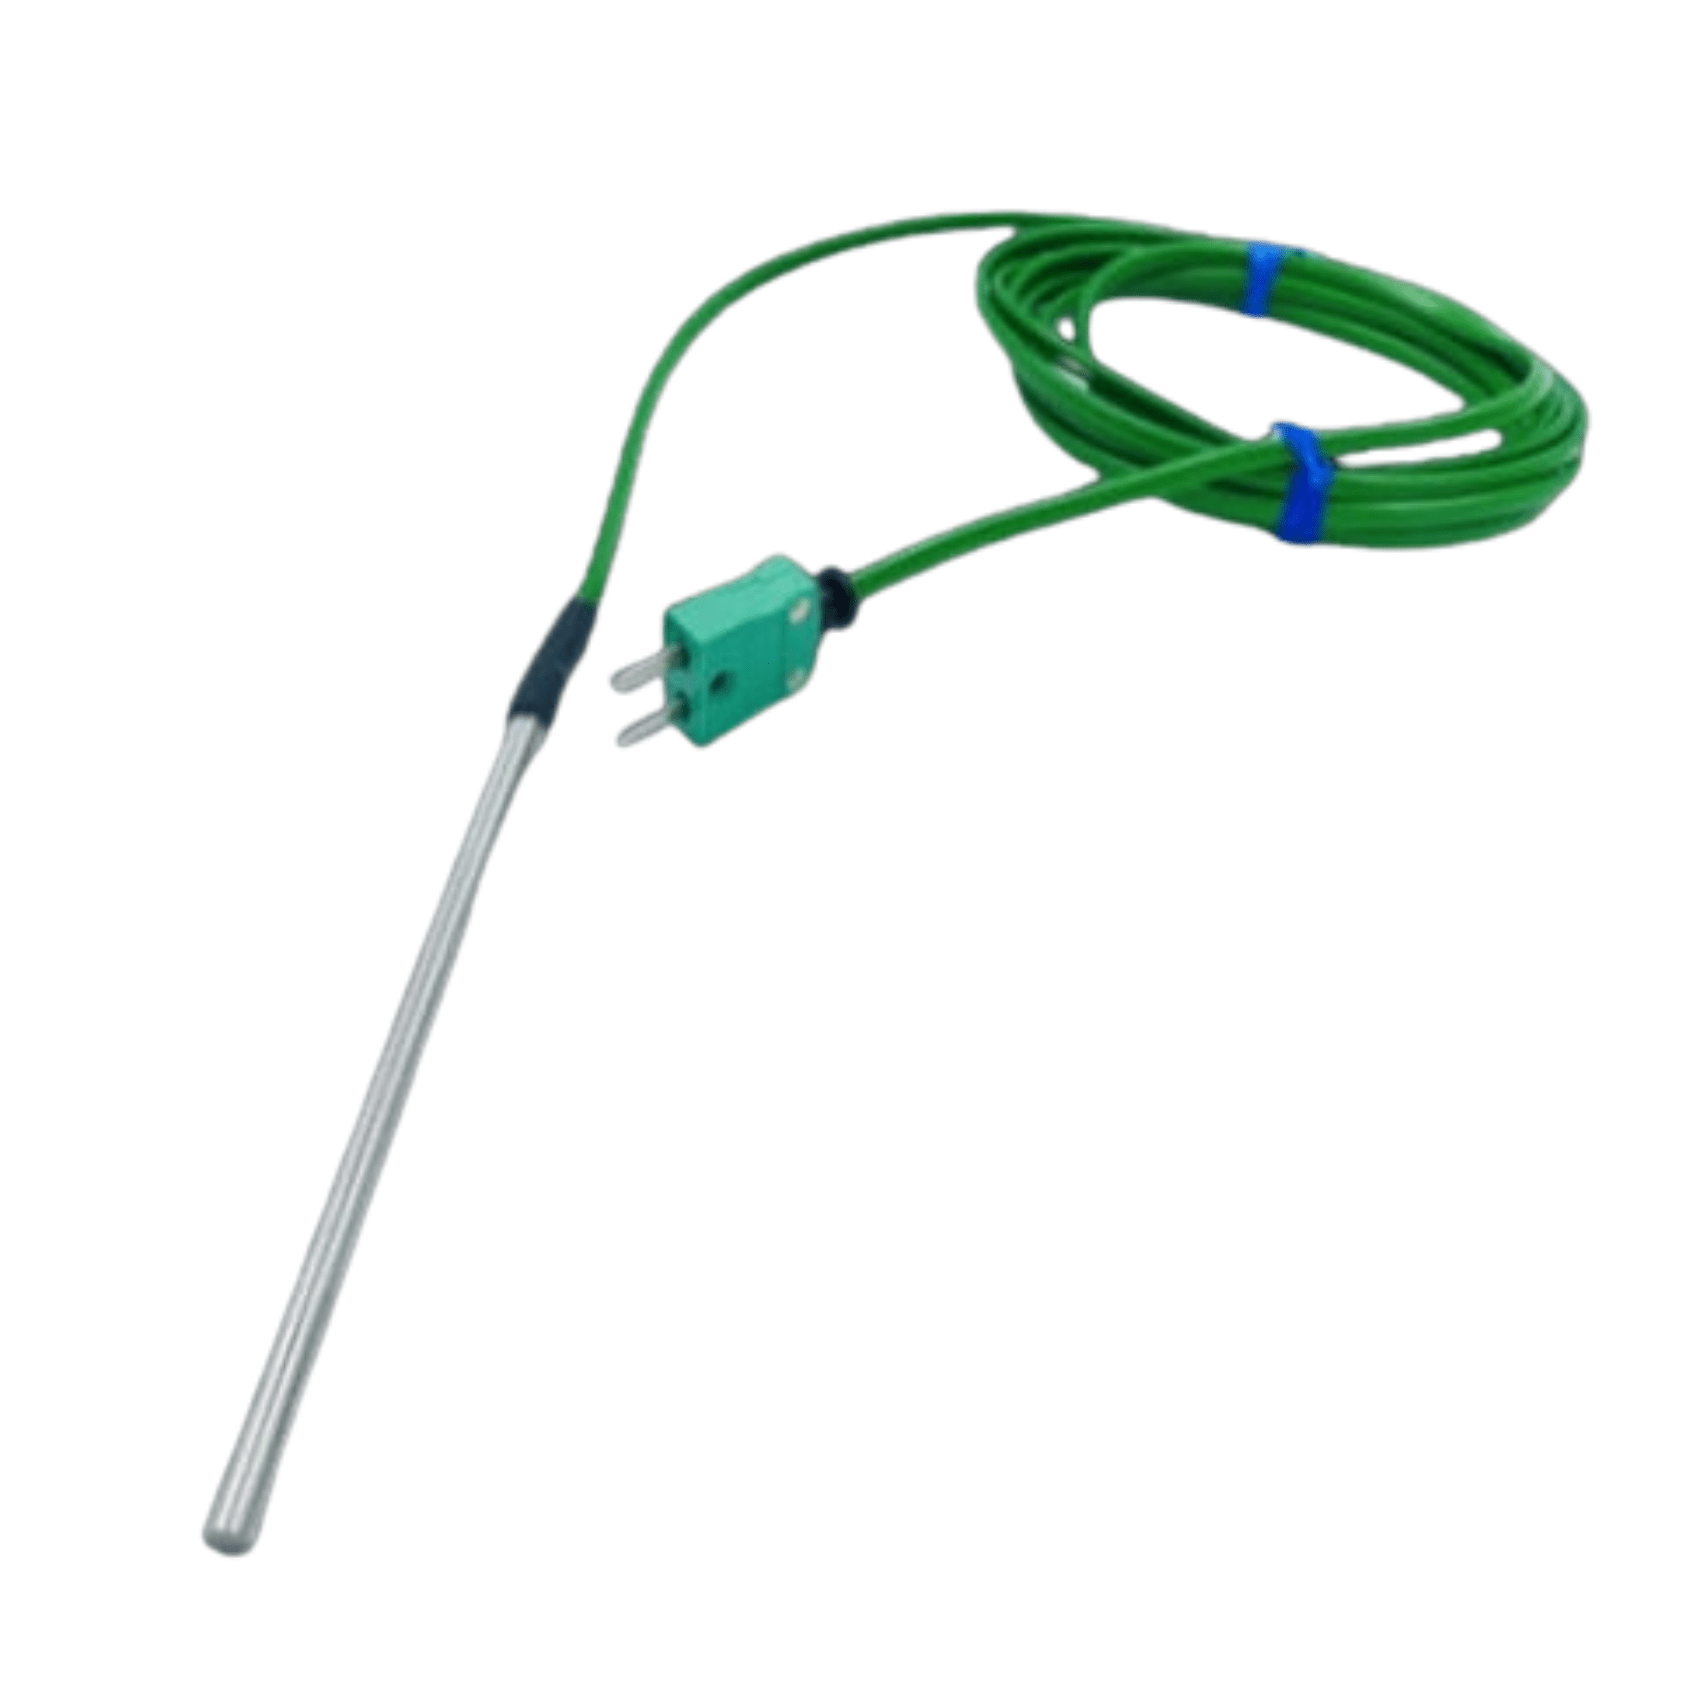 Un thermomètre Thermomètre.fr vert avec une sonde filaire fixée pour les applications industrielles.